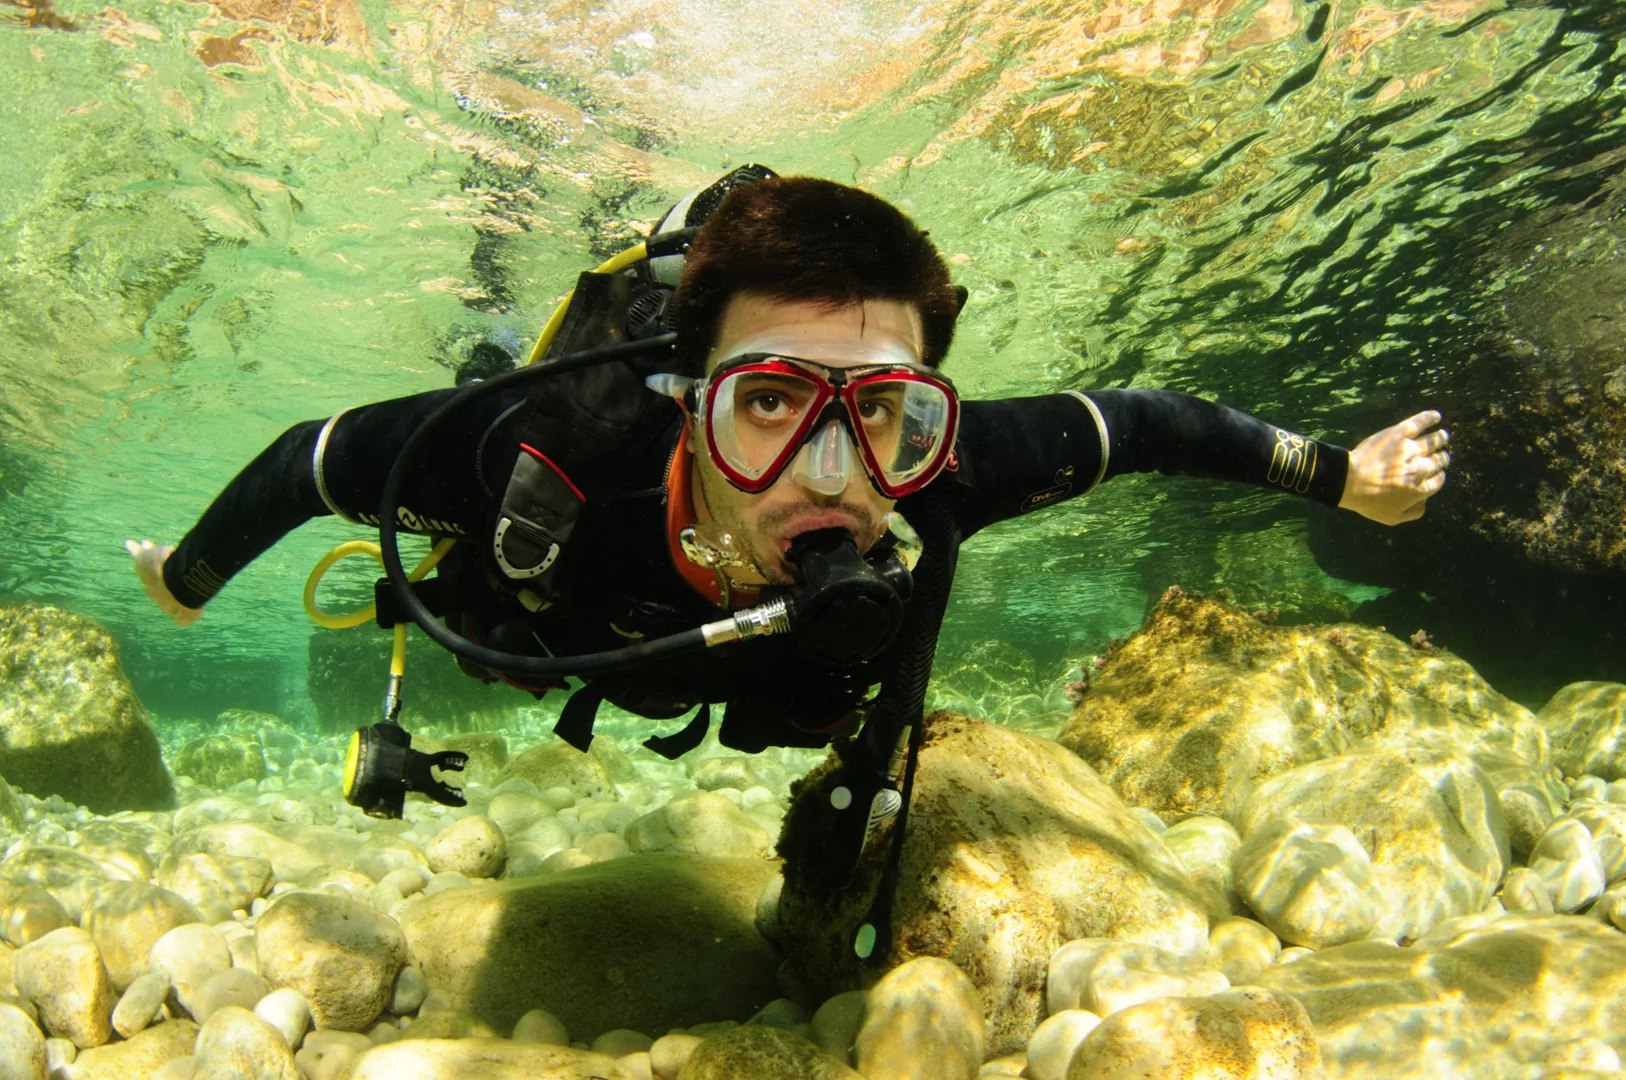 揭開伊維薩島的奇蹟：與 PADI 5* 中心一起探索水肺潛水員